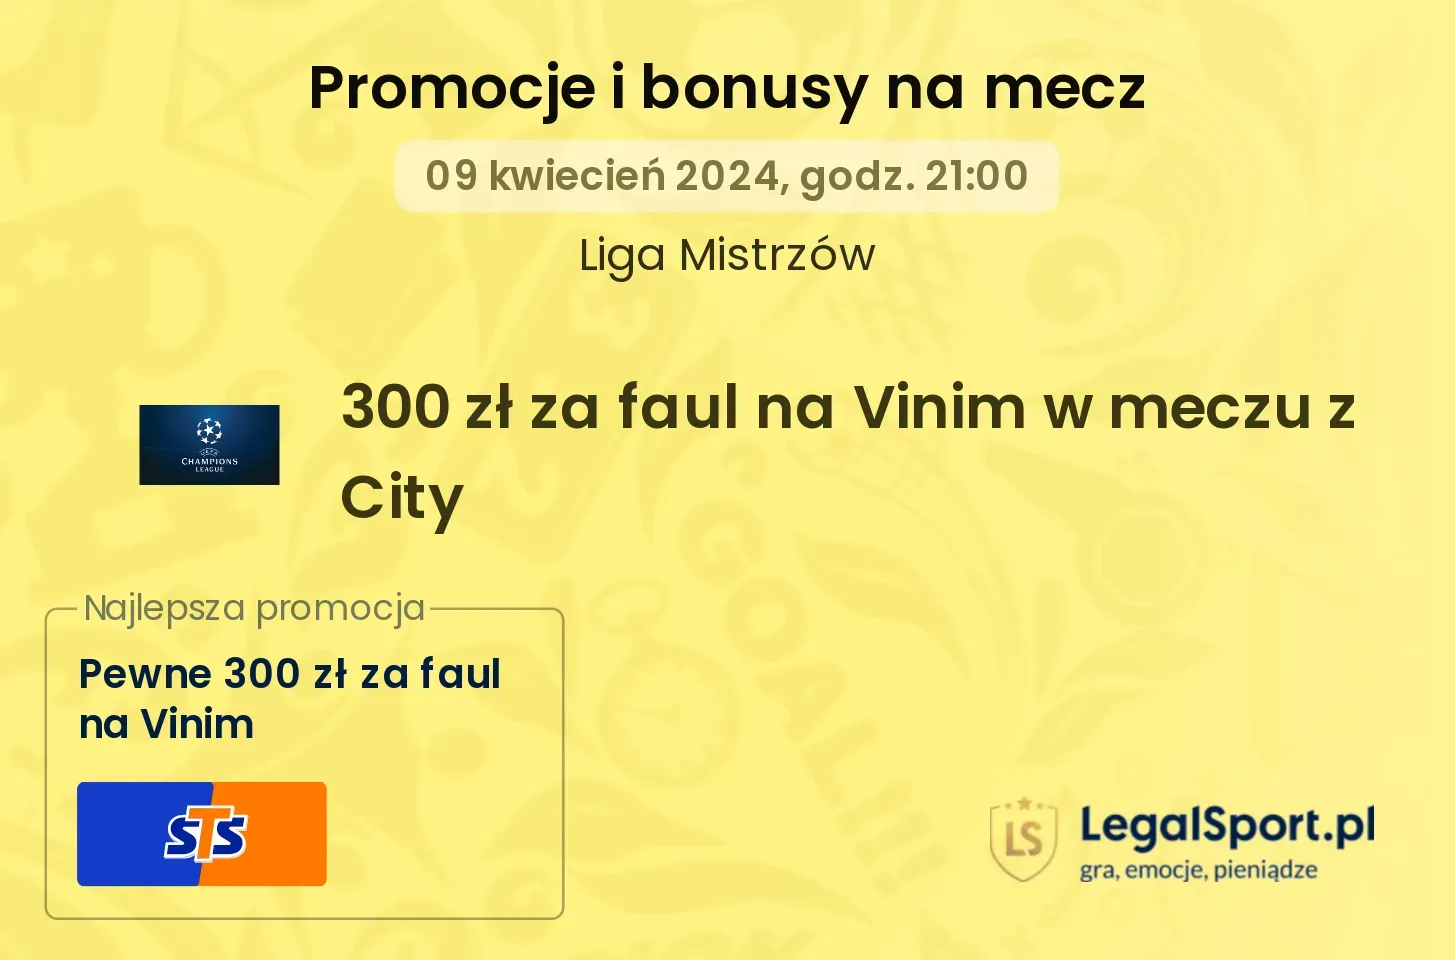 300 zł za faul na Vinim w meczu z City promocje bonusy na mecz